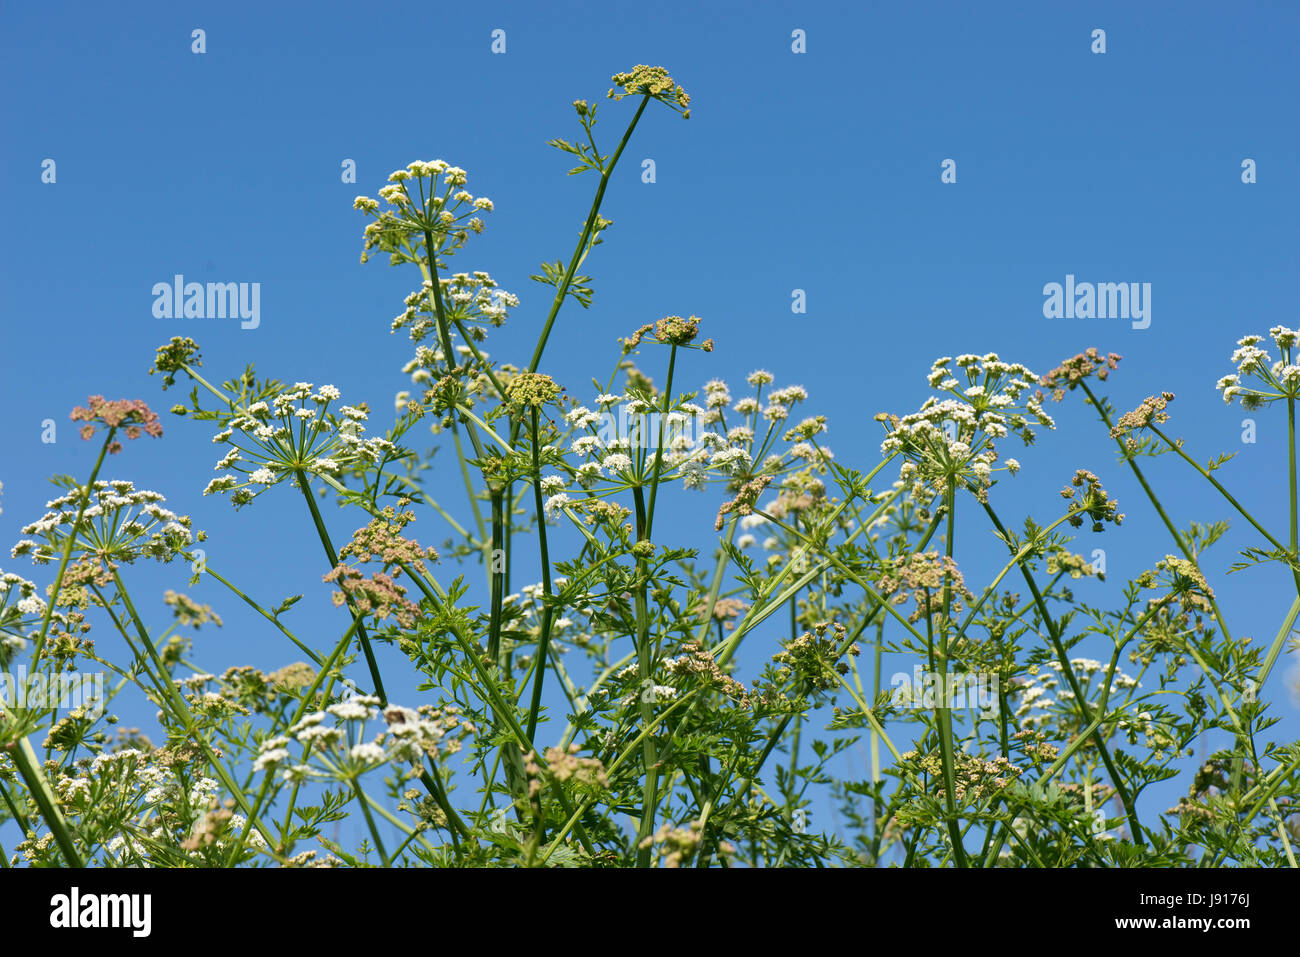 Hemlock Wasser asiatische, Oenanthe Crocata, weiße Dolden giftiger Doldengewächse Pflanze gegen einen blauen Sommerhimmel, Chesil Beach, Dorset, Mai Stockfoto